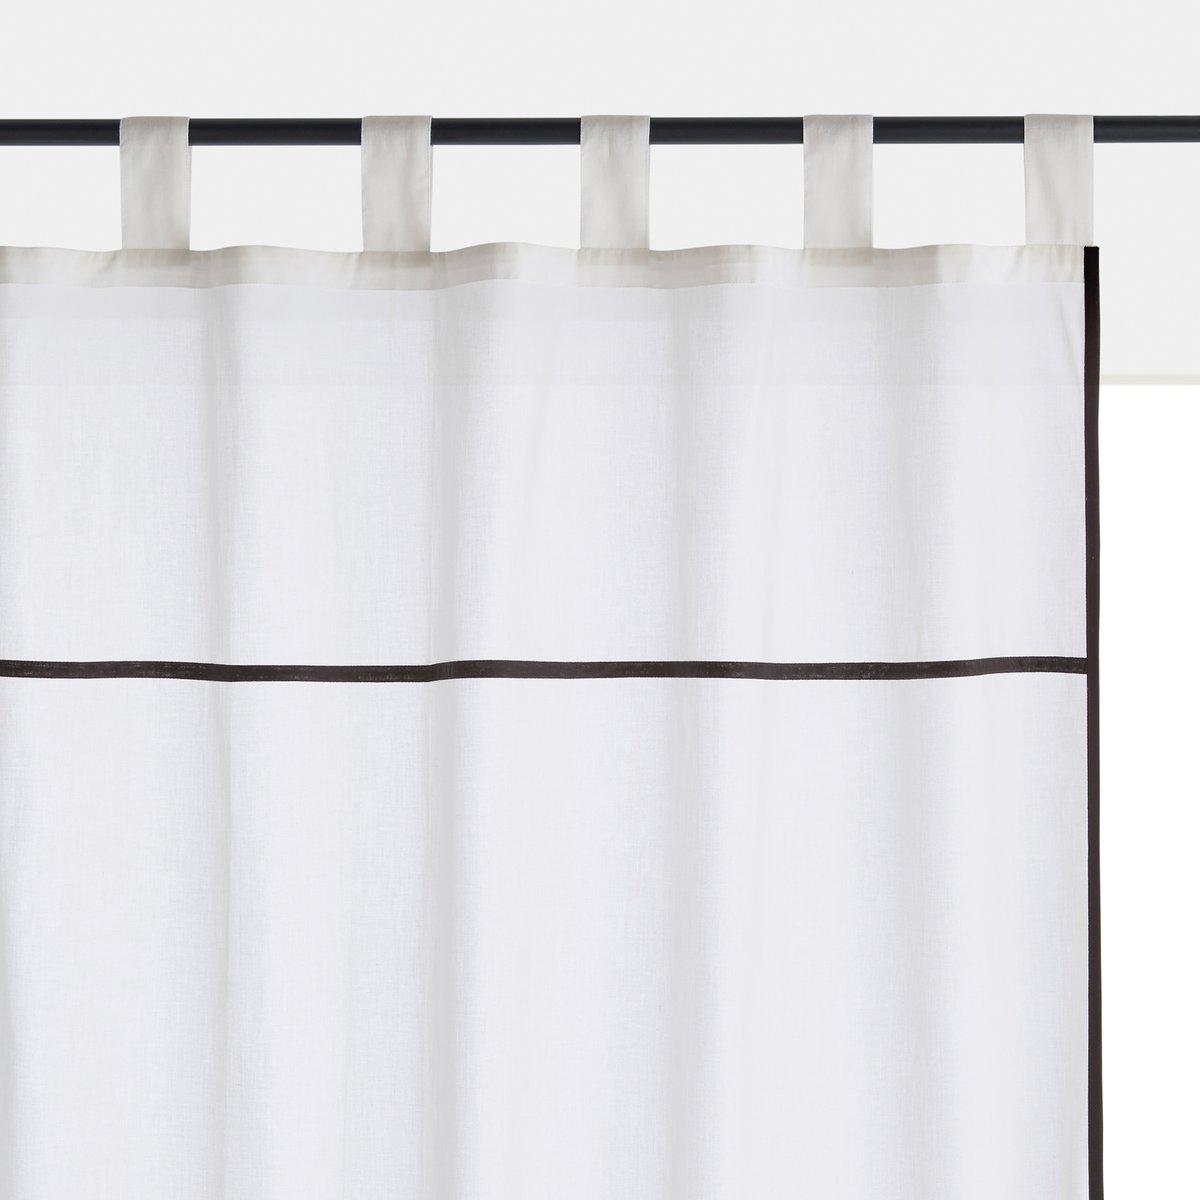 Image of Jamdi Curtain Panel in Sheer Organic Cotton